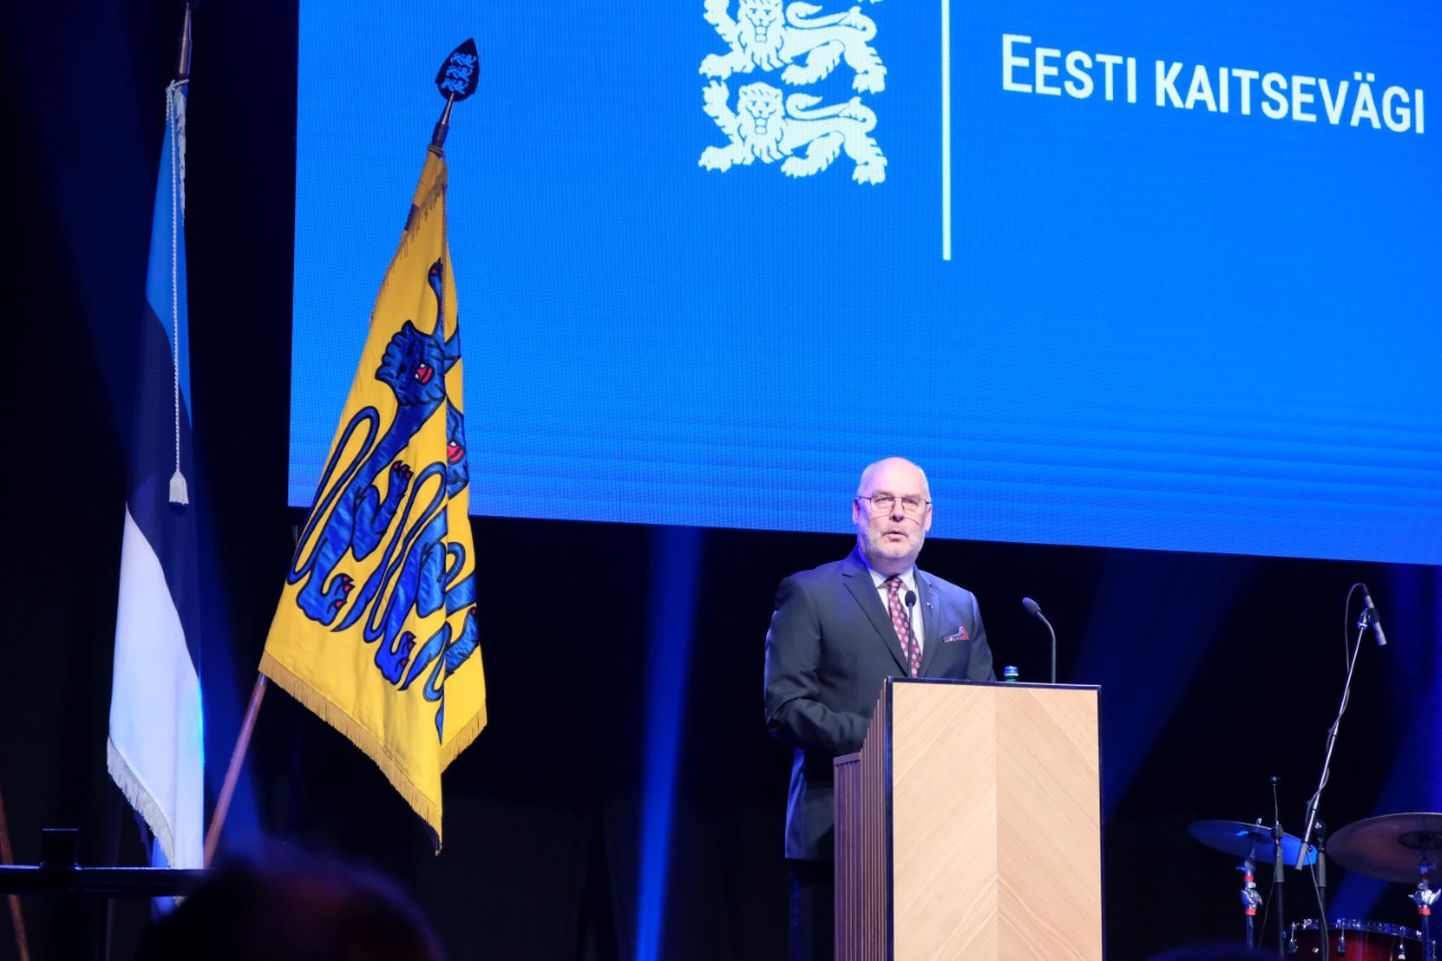 President Alar Karis Kaitseväe aastapäeva kõnet pidamas.